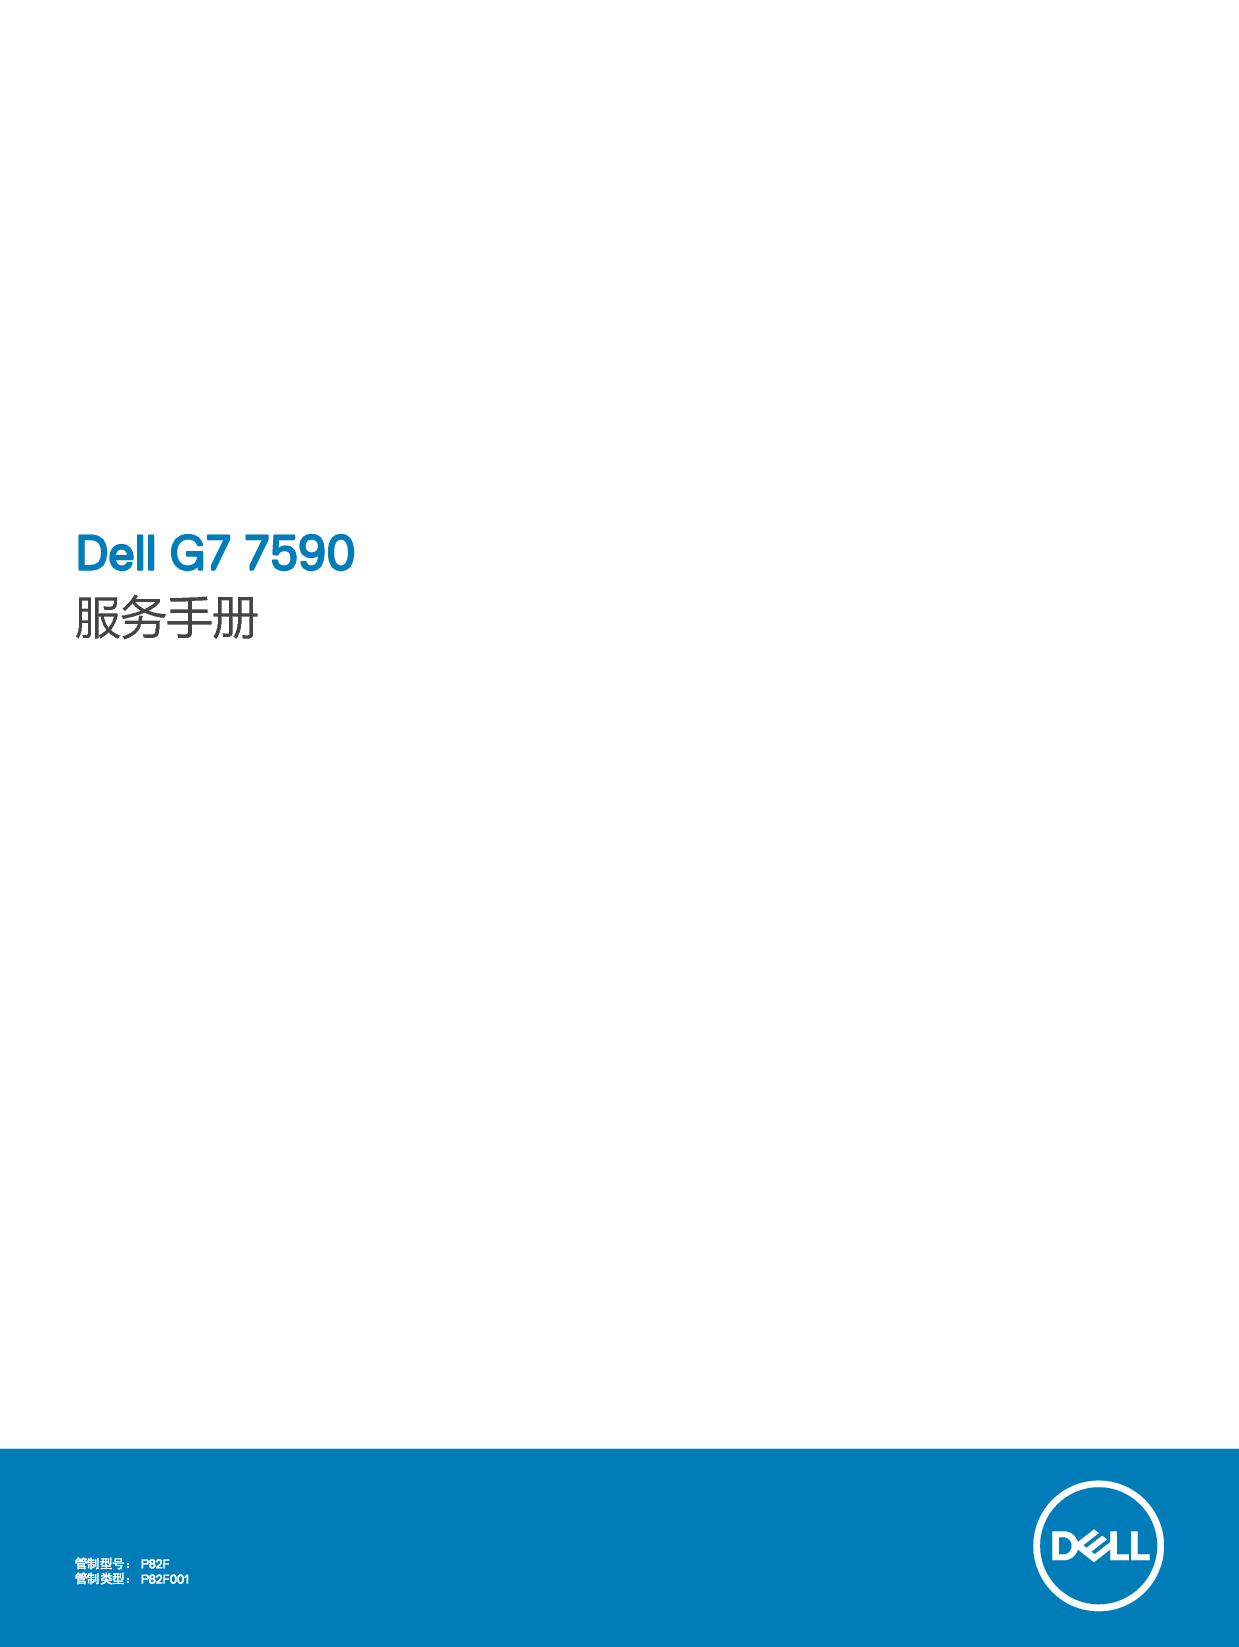 戴尔 Dell G7 15 7590 维修服务手册 封面